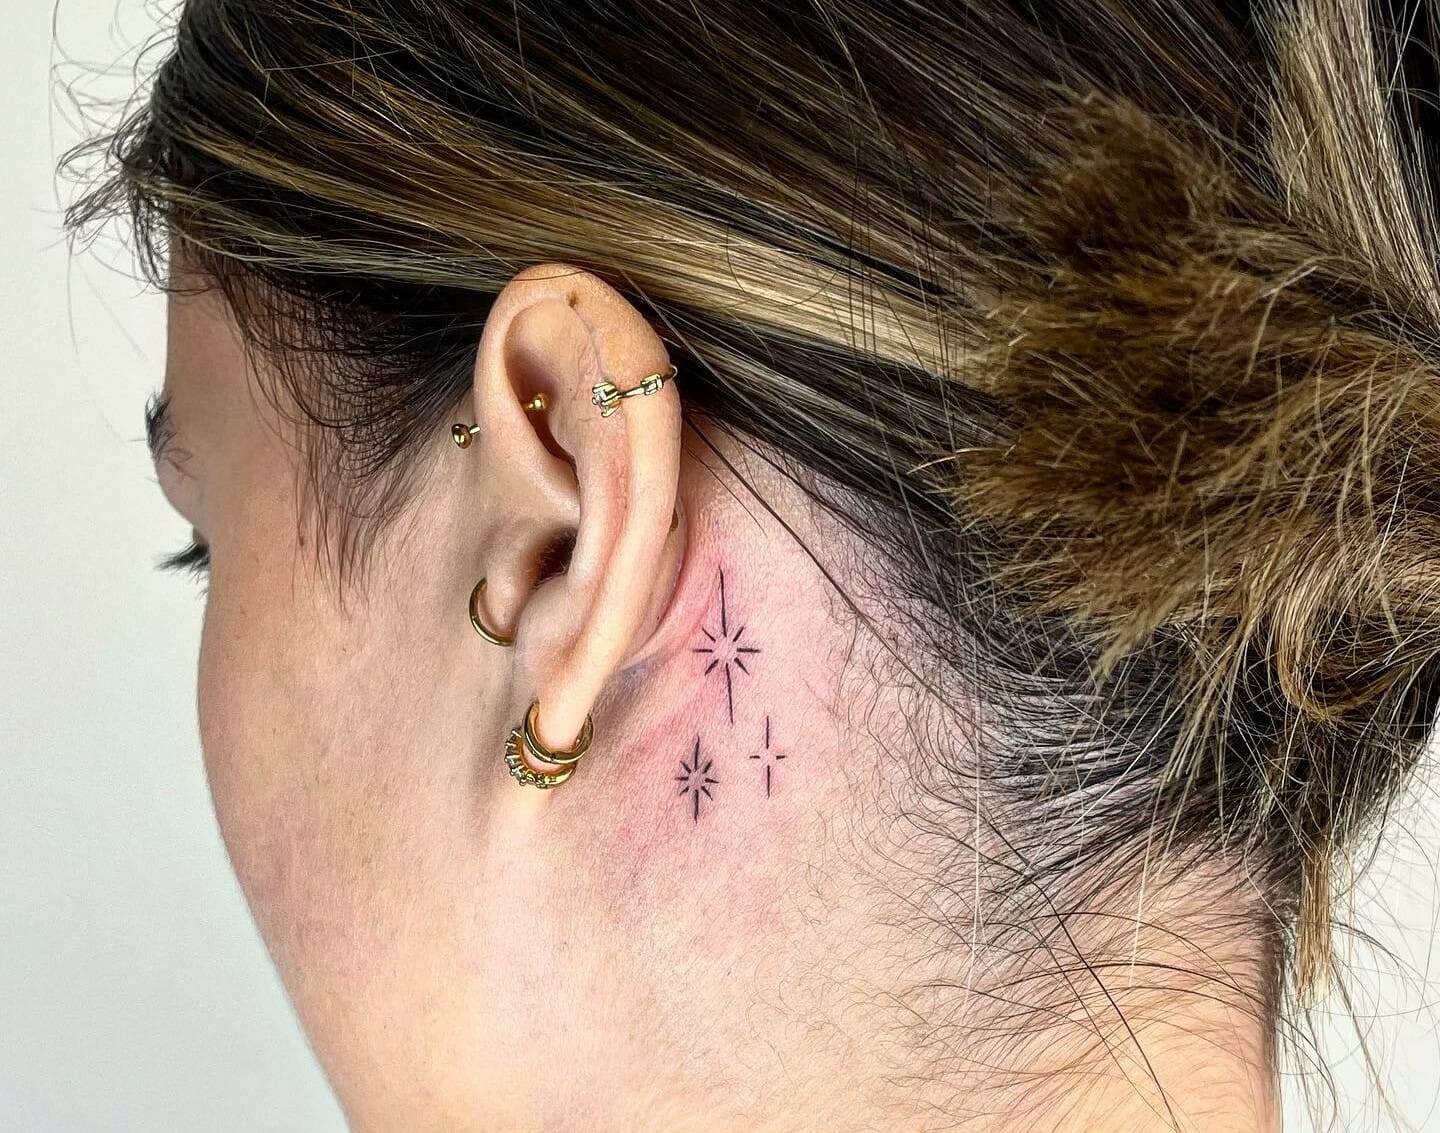 Minimalist letter F tattoo behind the ear